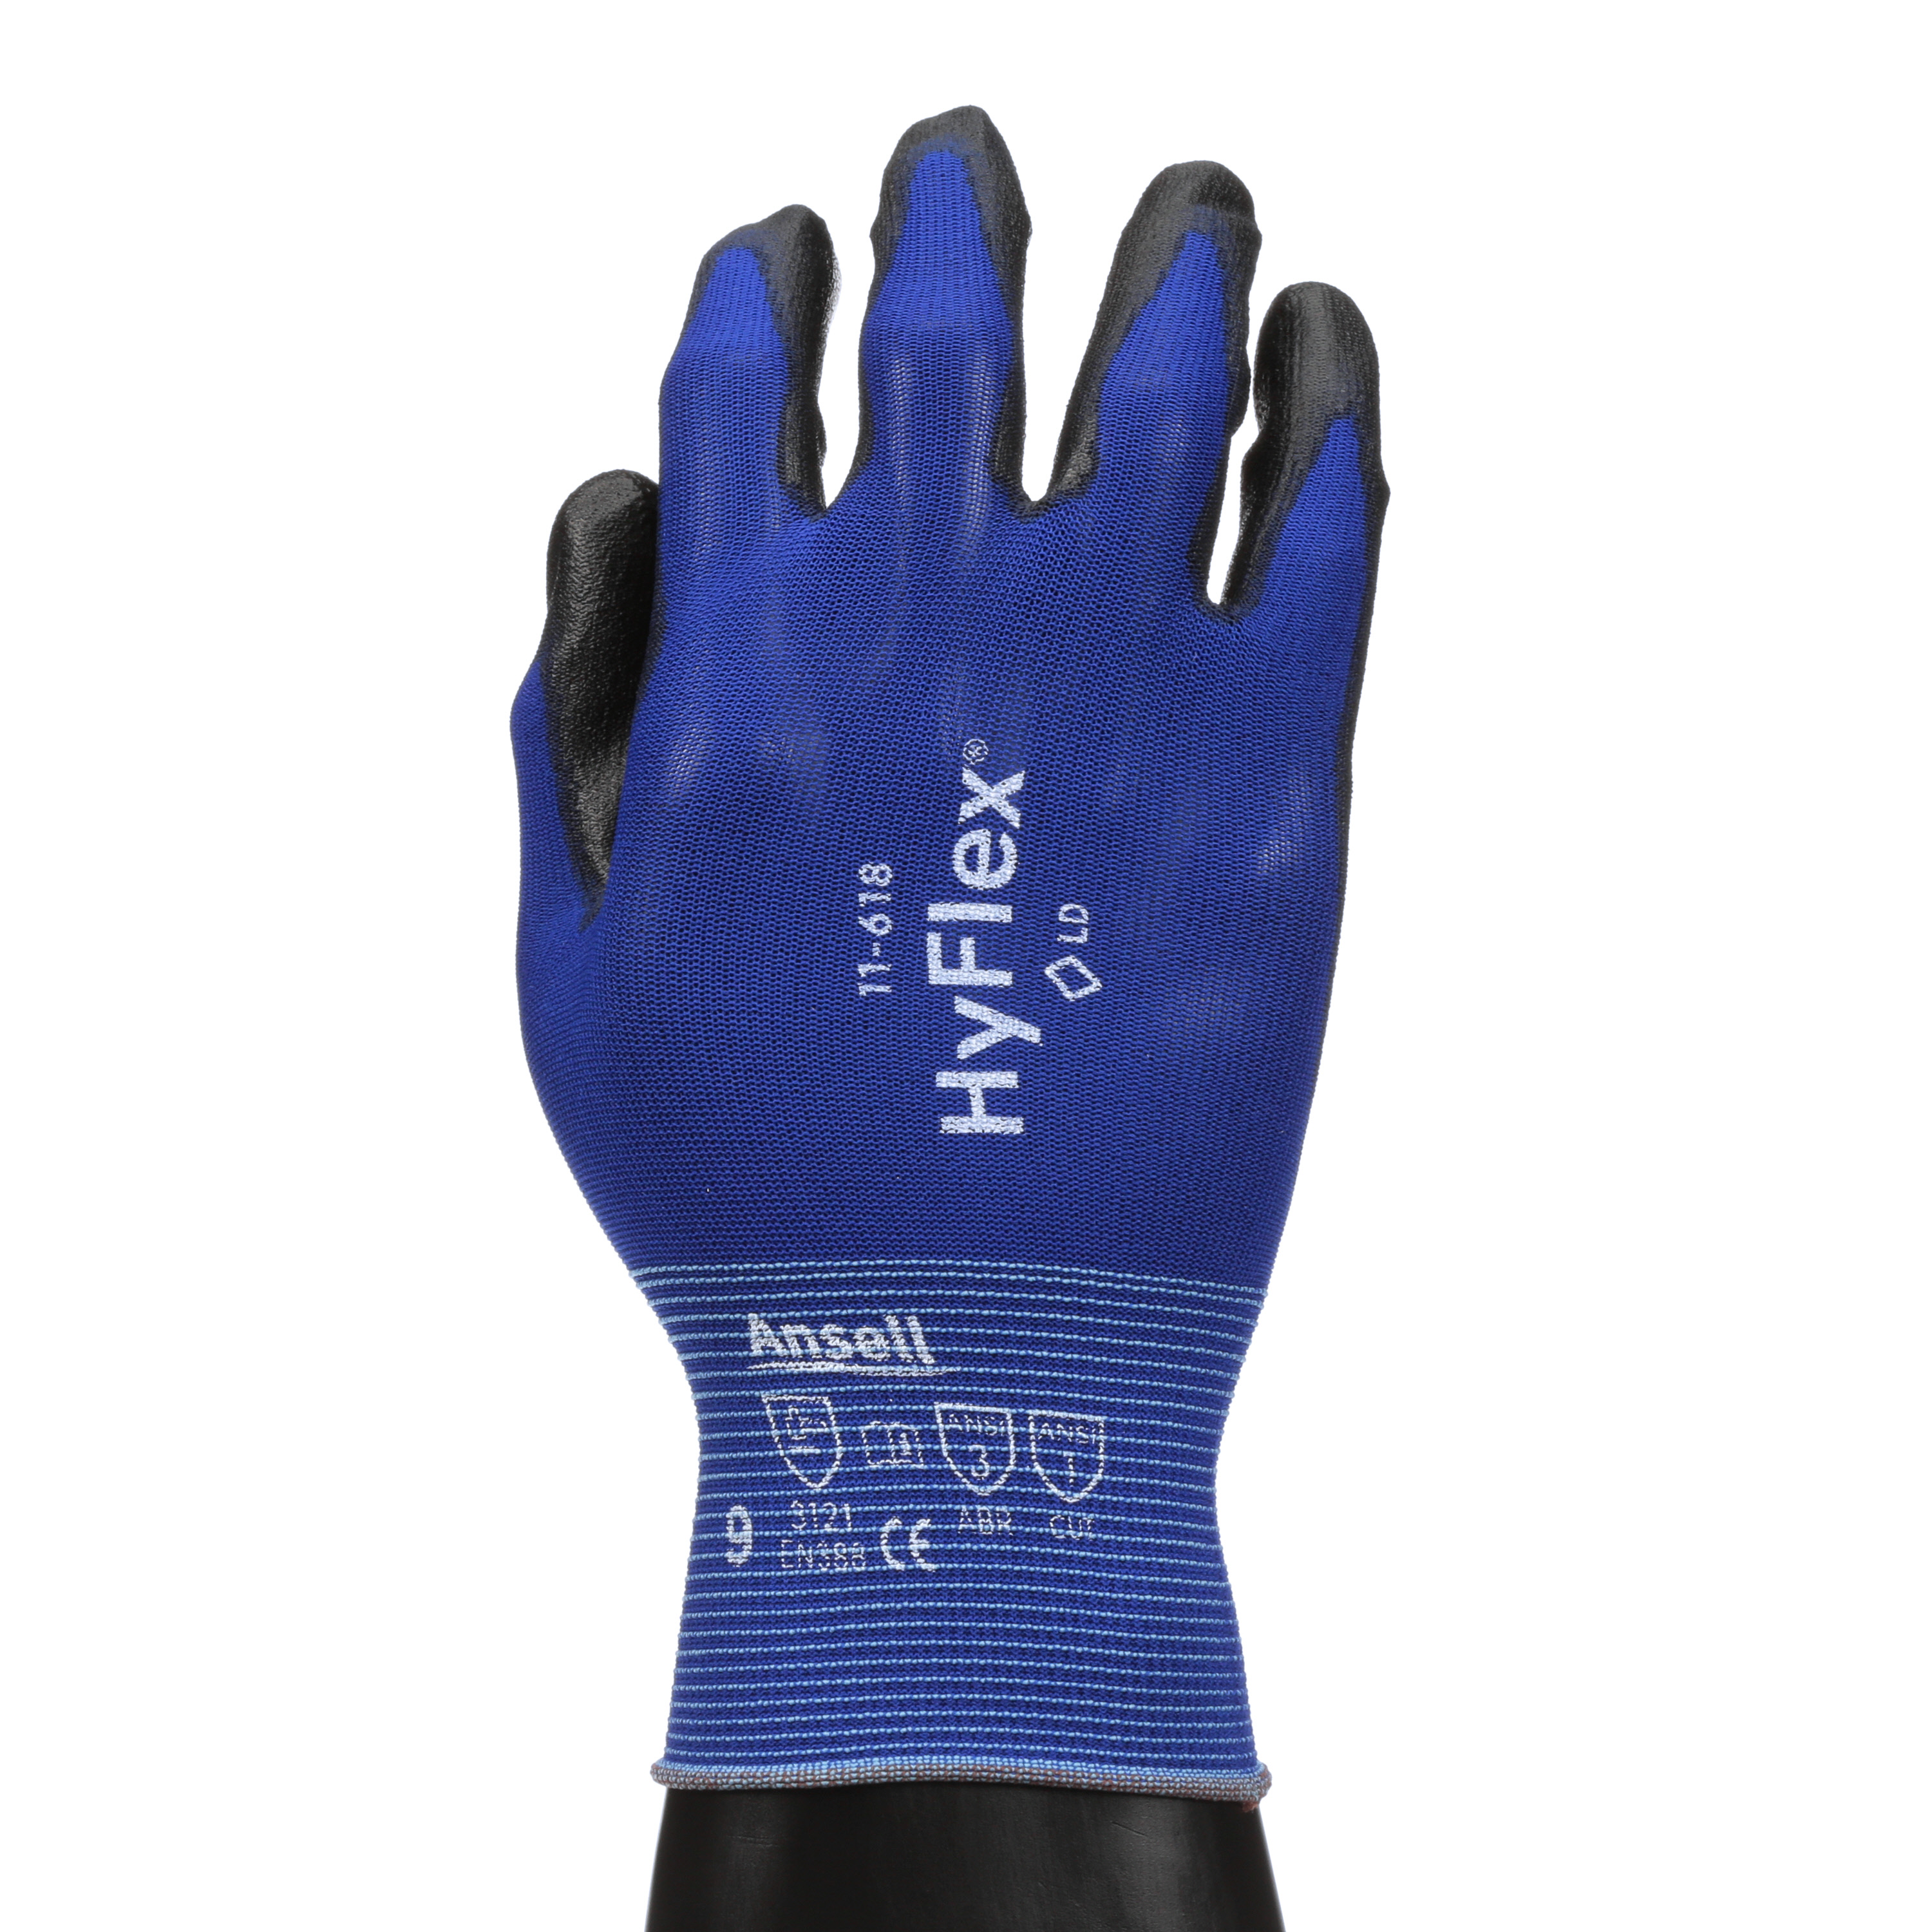 10 Gr ANSELL Montage-Handschuh HyFlex 11-618,blau/schwarz 